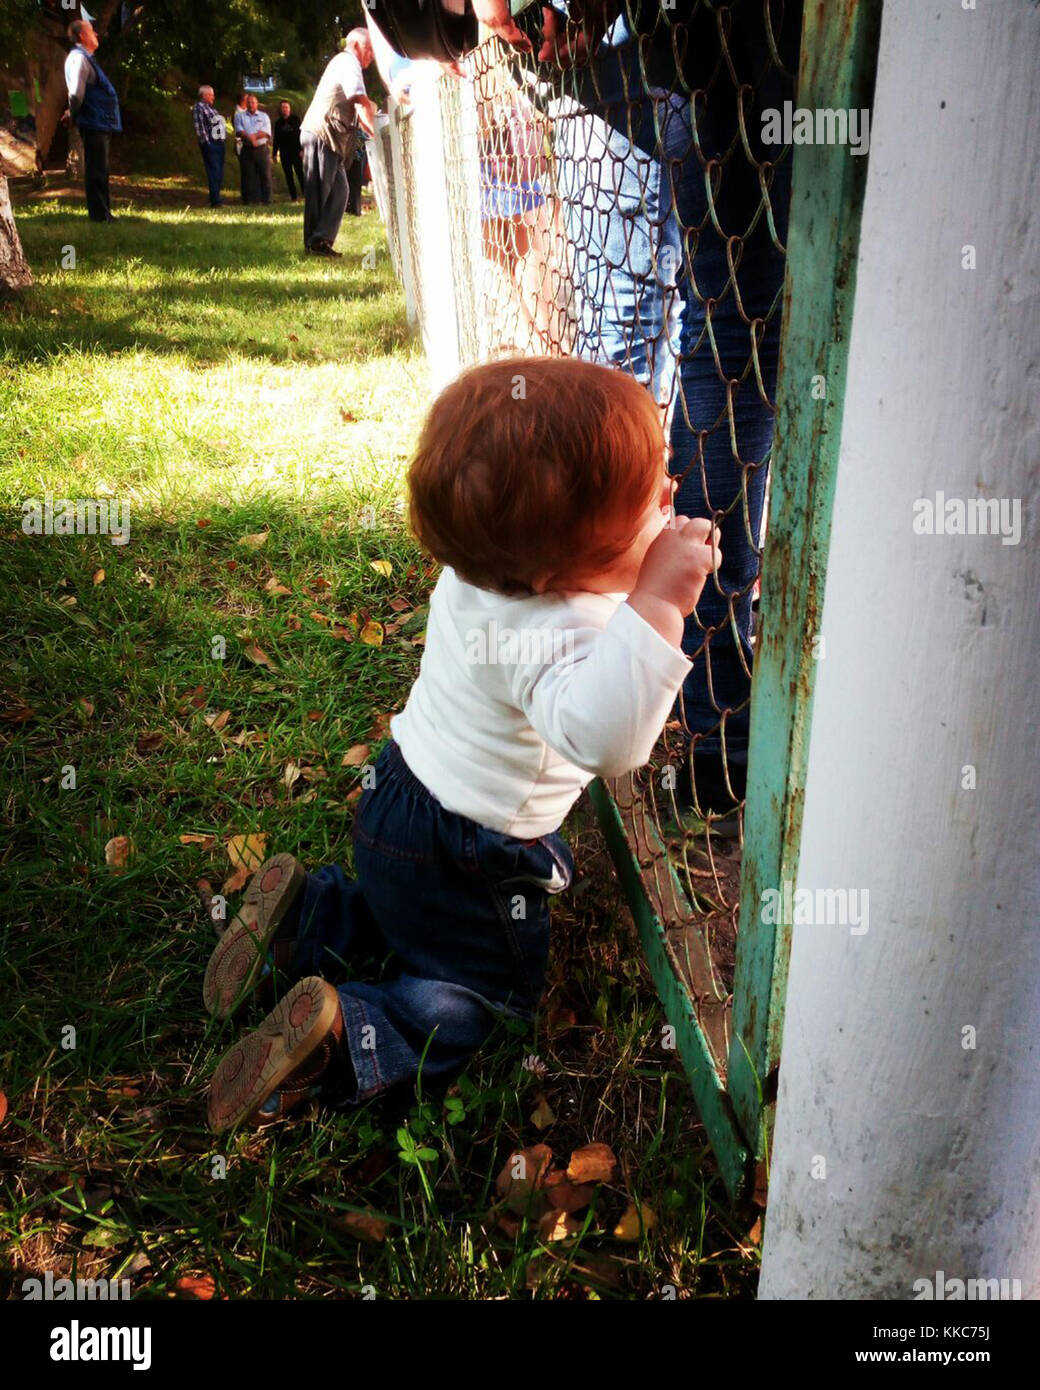 Süße kleine Baby mit Ingwer Haar durch den Zaun auf Knien allein unter erwachsenen Menschen um. Stockfoto